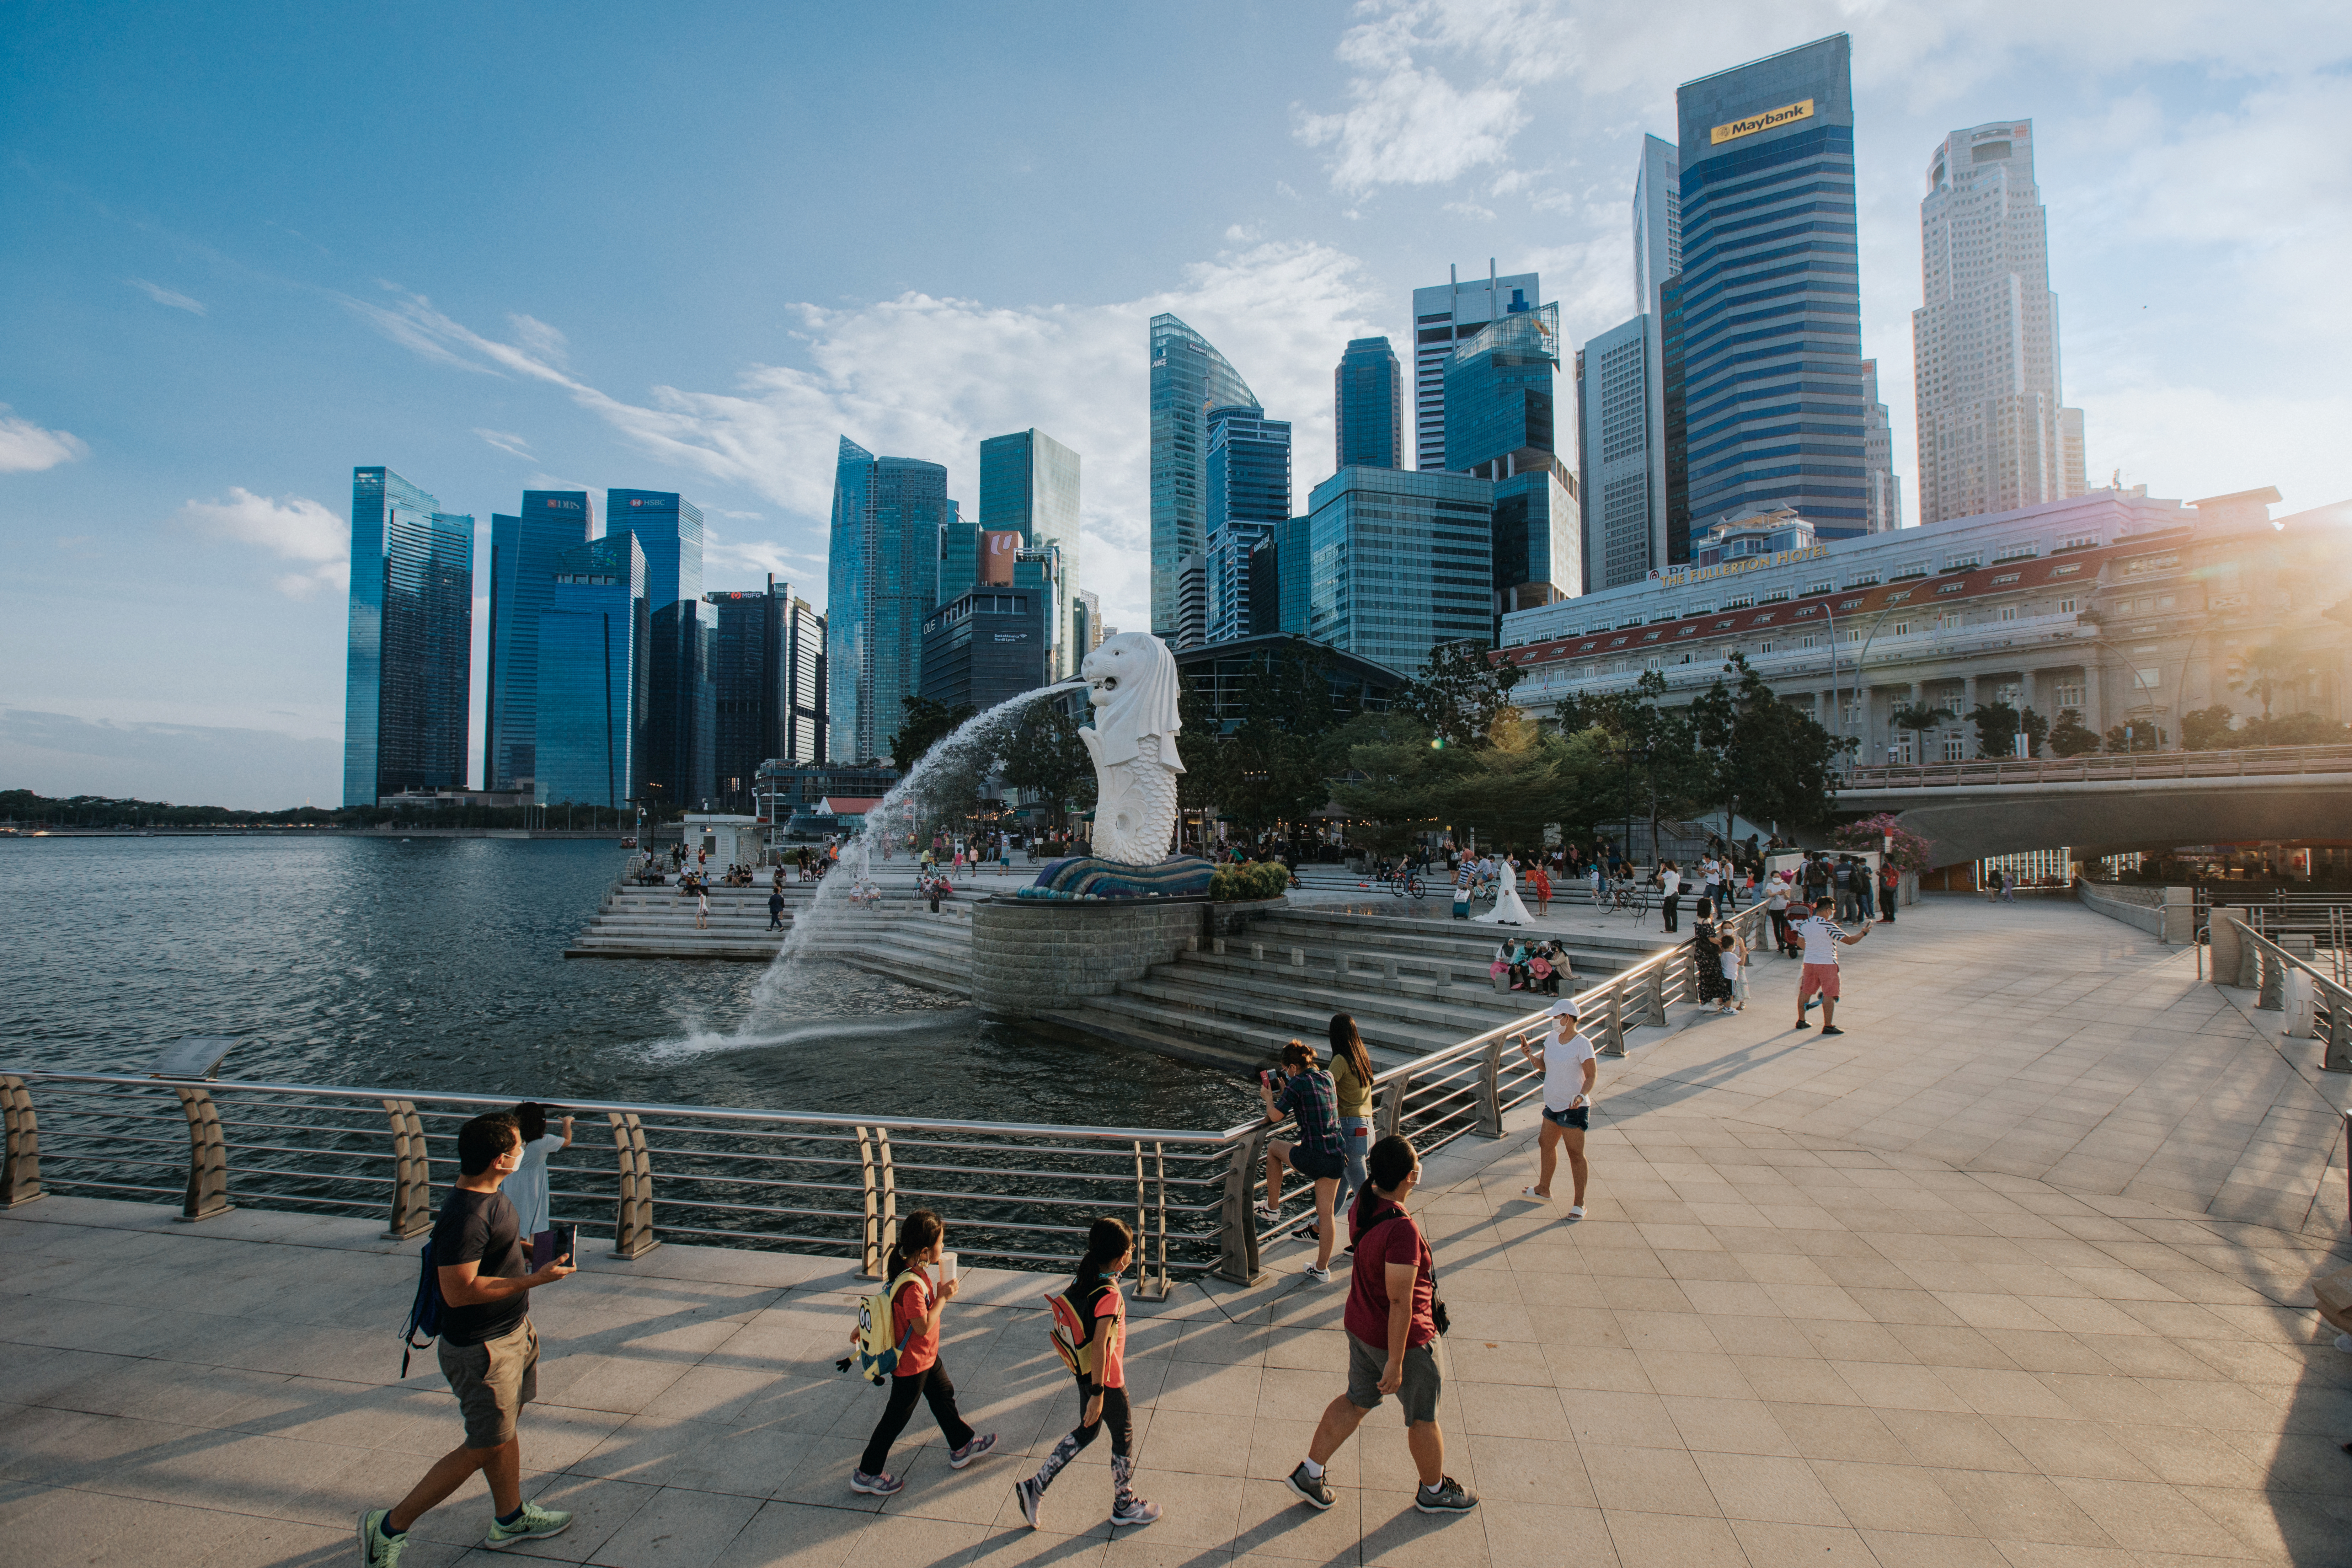 Singapore được bình chọn là một trong mười địa điểm du lịch hấp dẫn nhất thế giới theo Khảo sát của Agoda về Tình hình khả quan của ngành du lịch năm 2022.